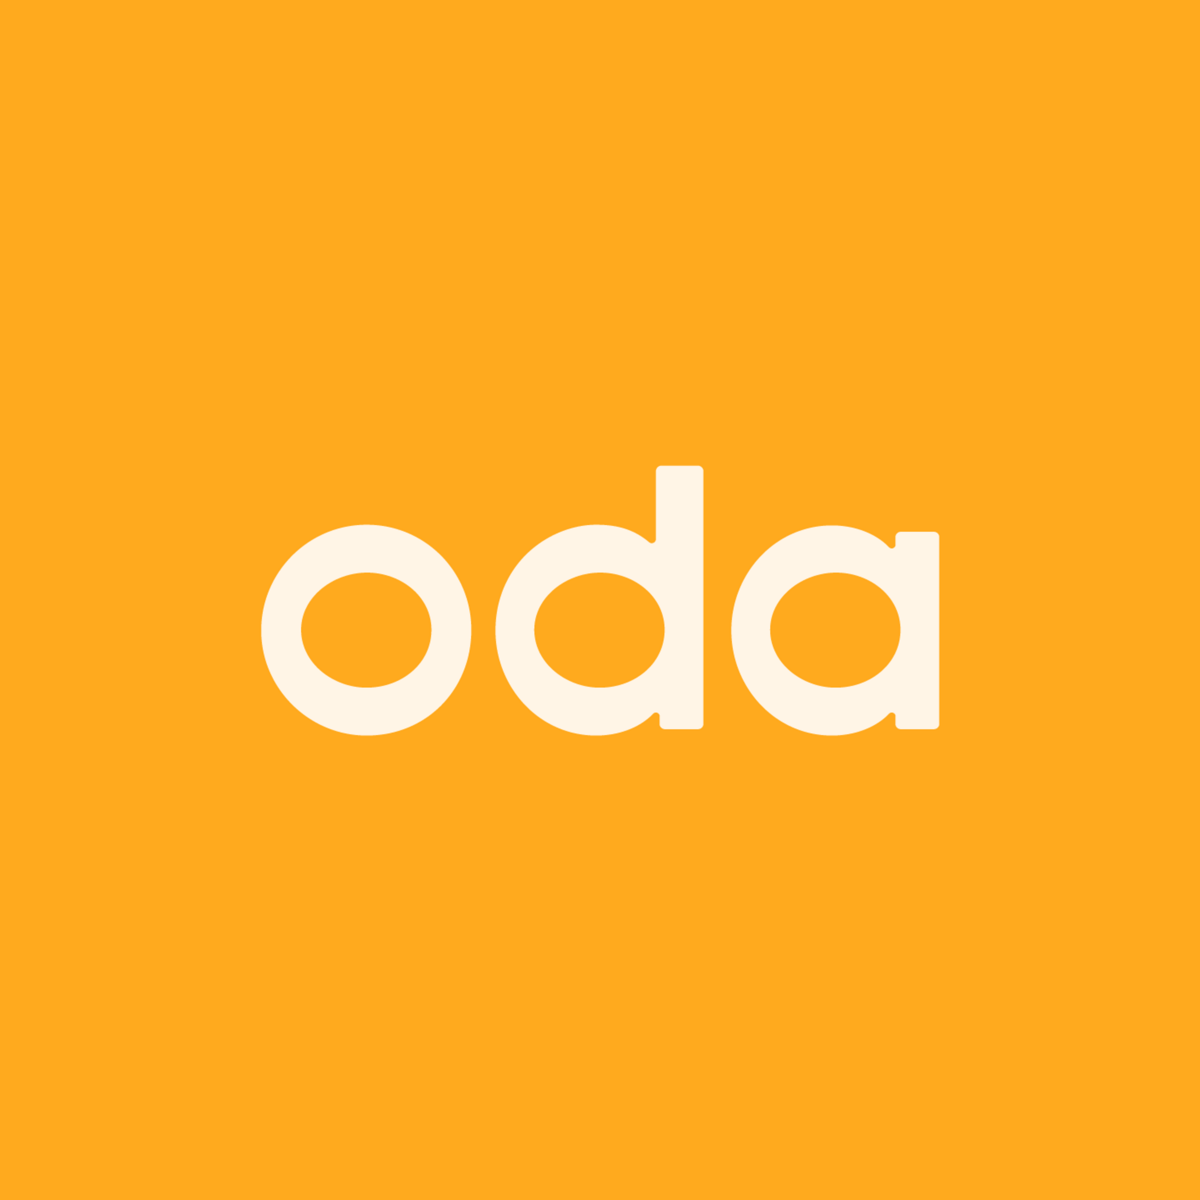 Oda (previously Kolonial)’s logo